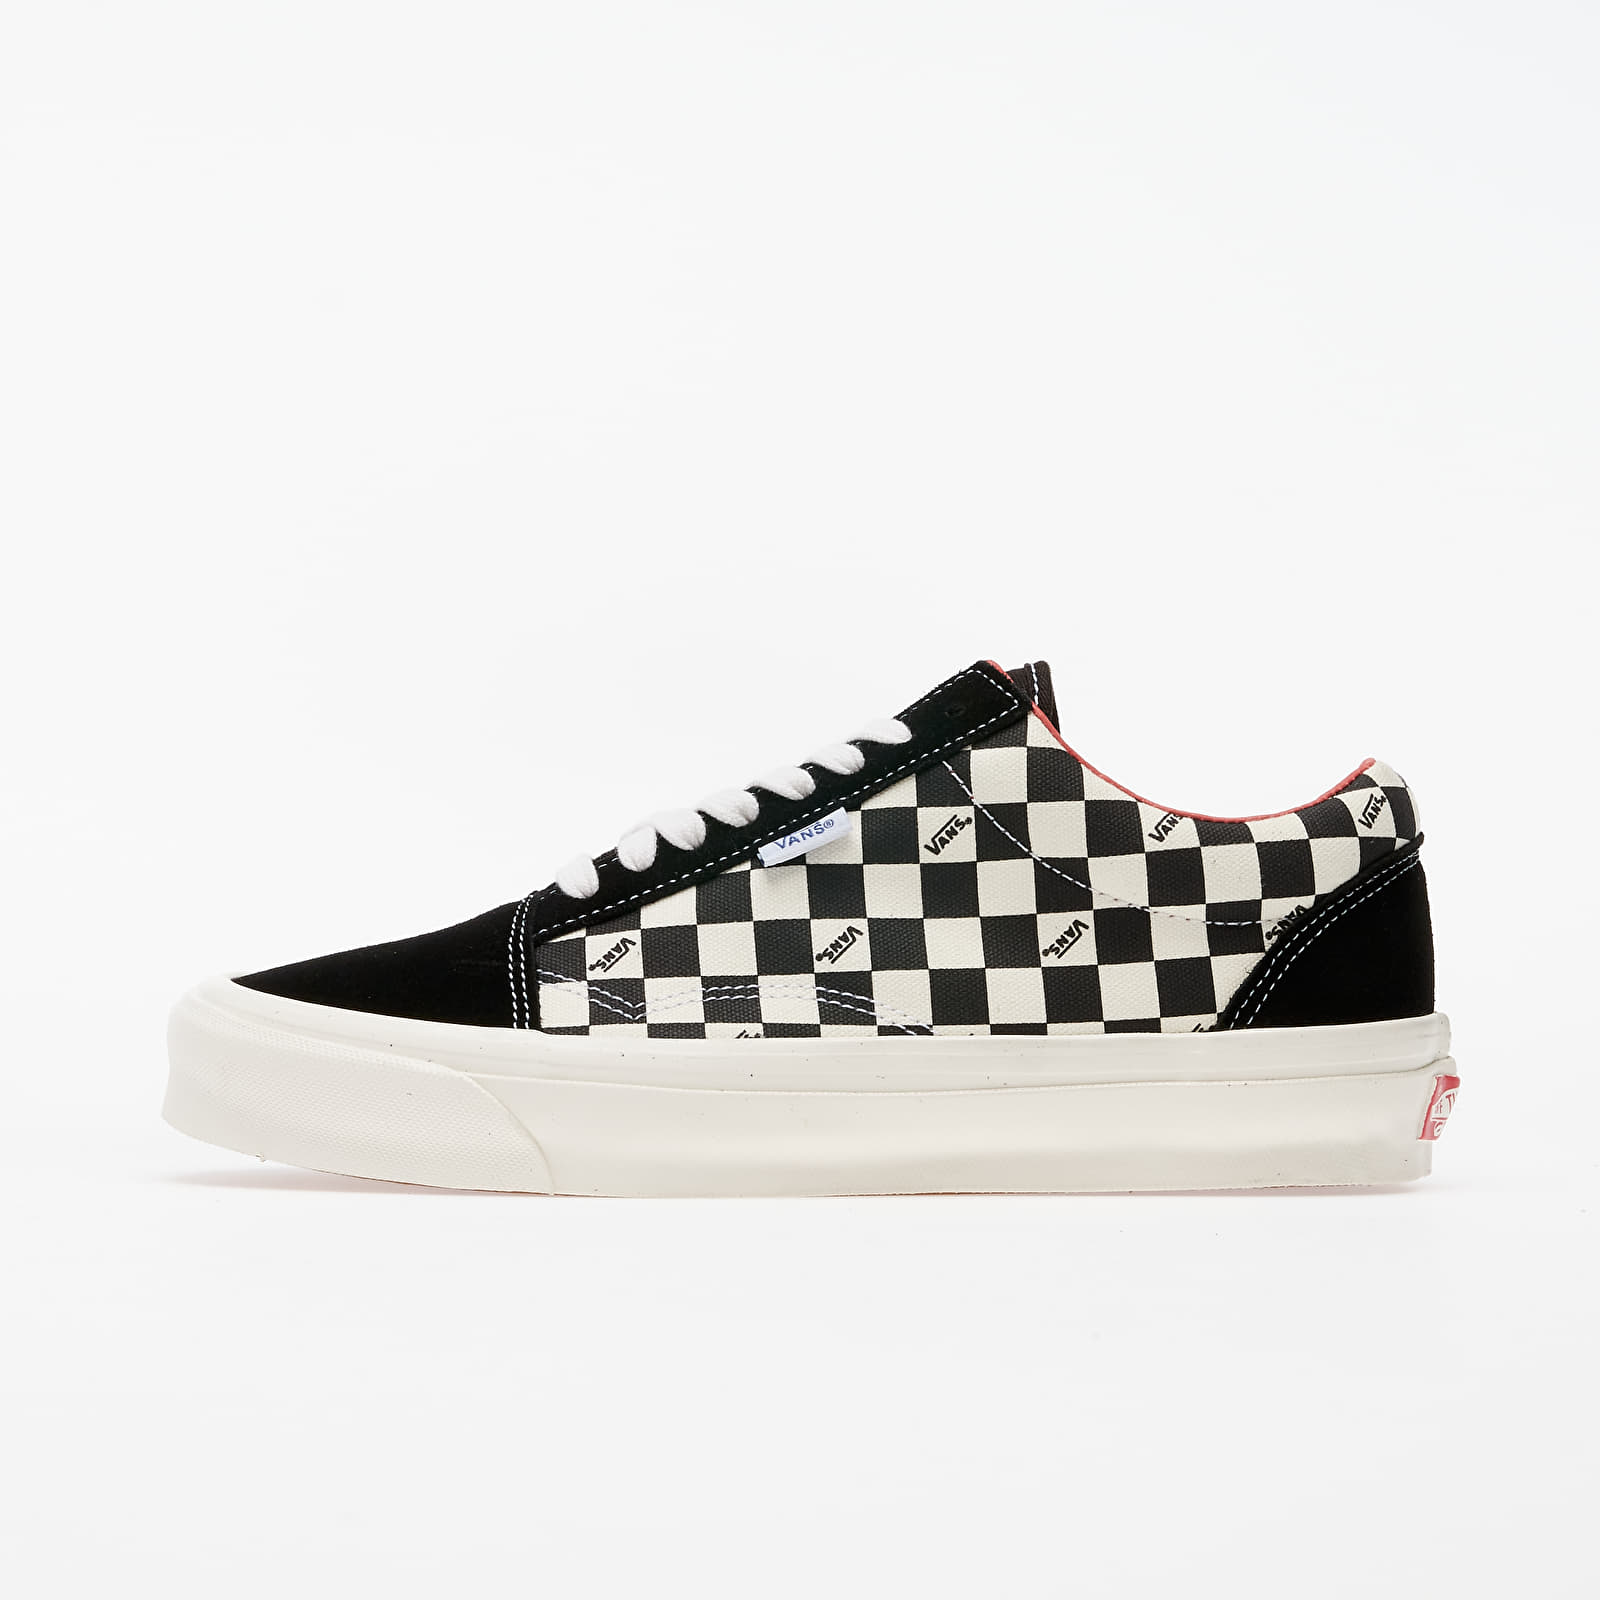 Ανδρικά παπούτσια Vans Vault Old Skool NS OG LX (Suede/ Canvas) Checkerboard